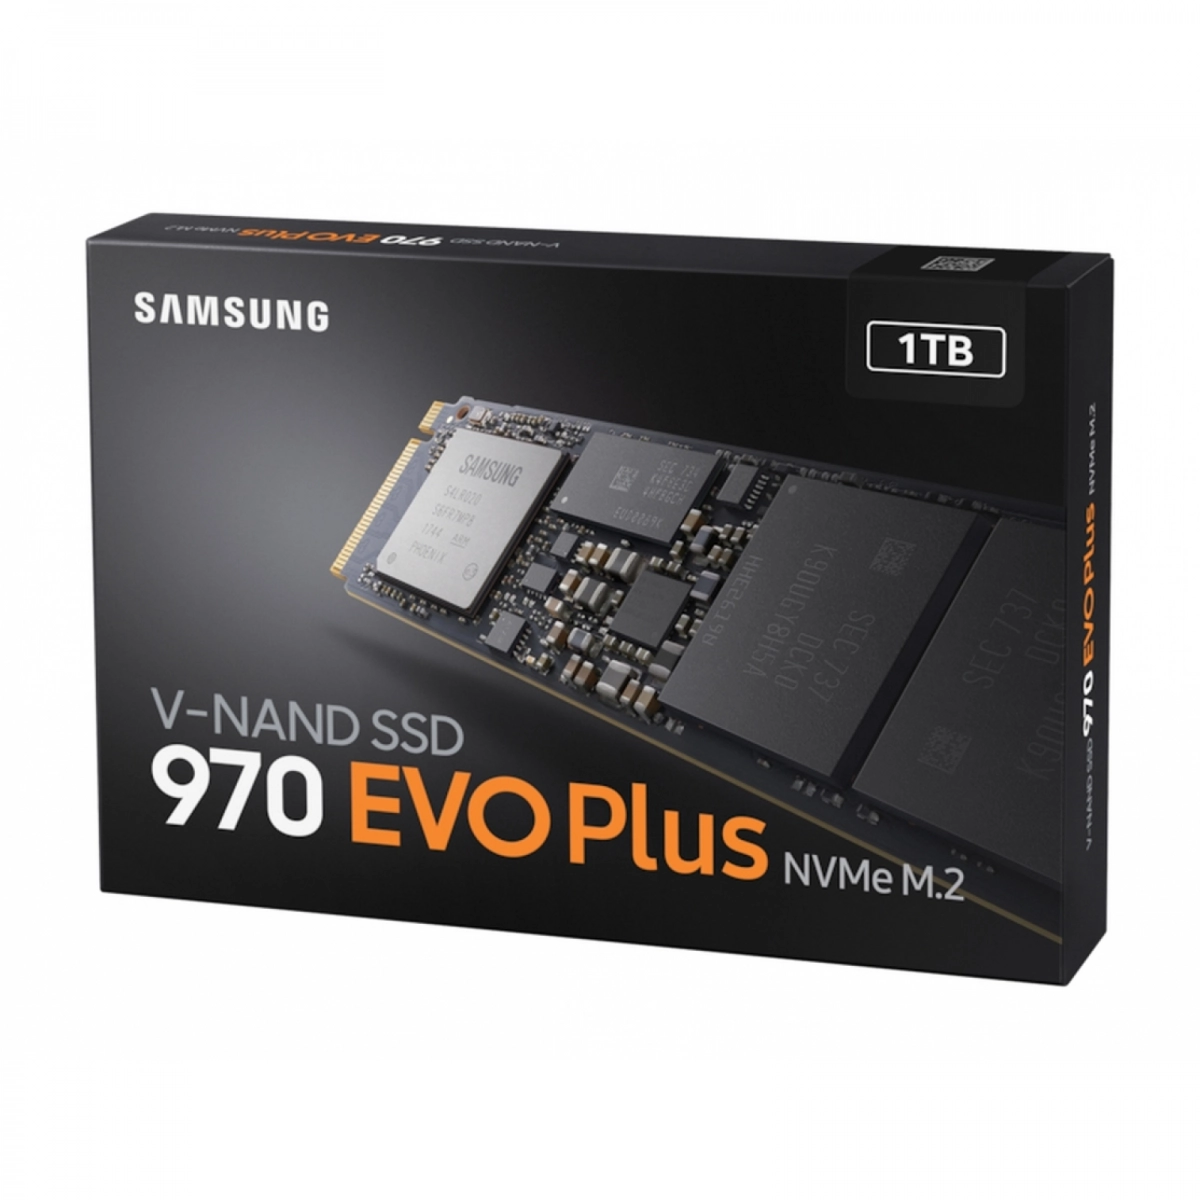 Samsung 970 EVO Plus SSD 1 TB NVMe Fast PCIe 3.0 x4 MZ-V7S1T0BW